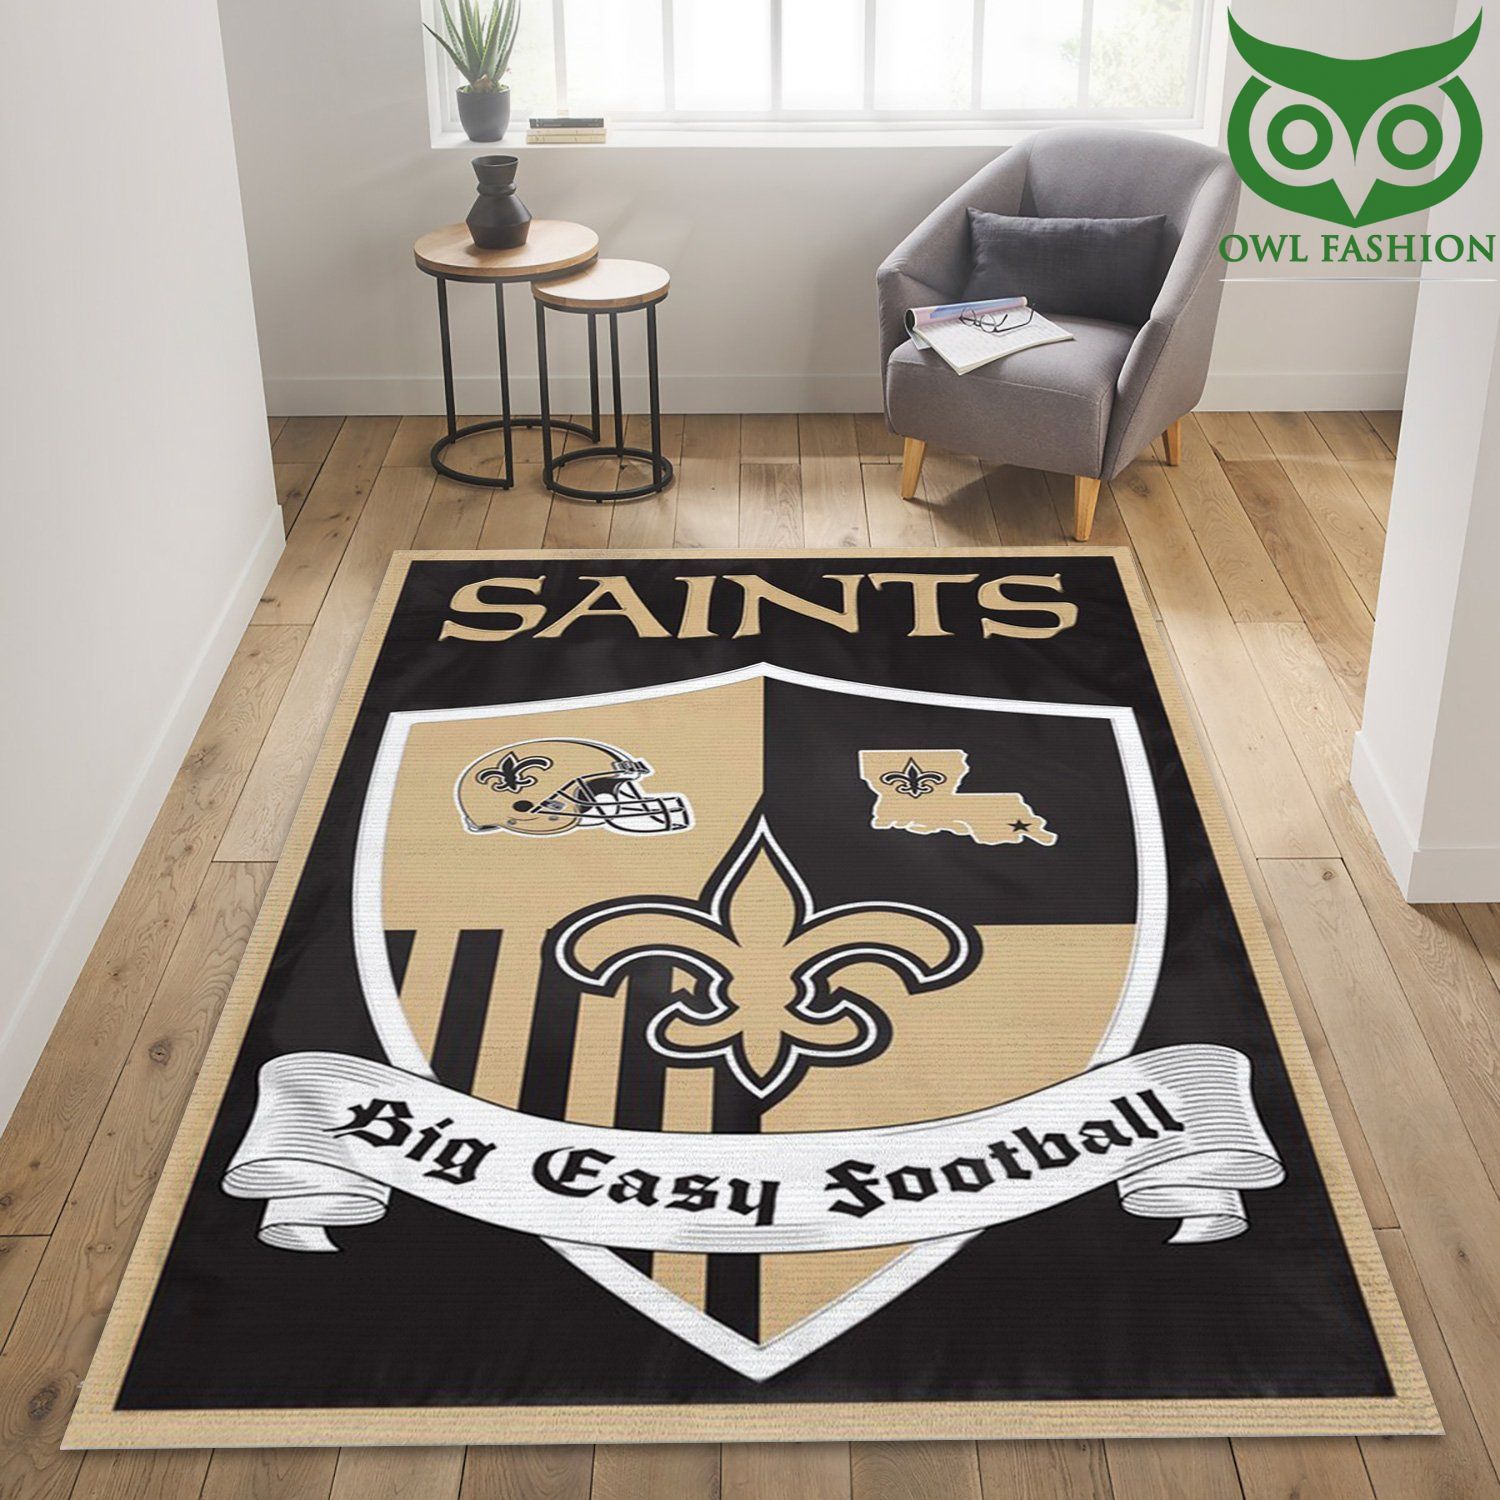 New Orleans Saints Big Easy NFL carpet rug special